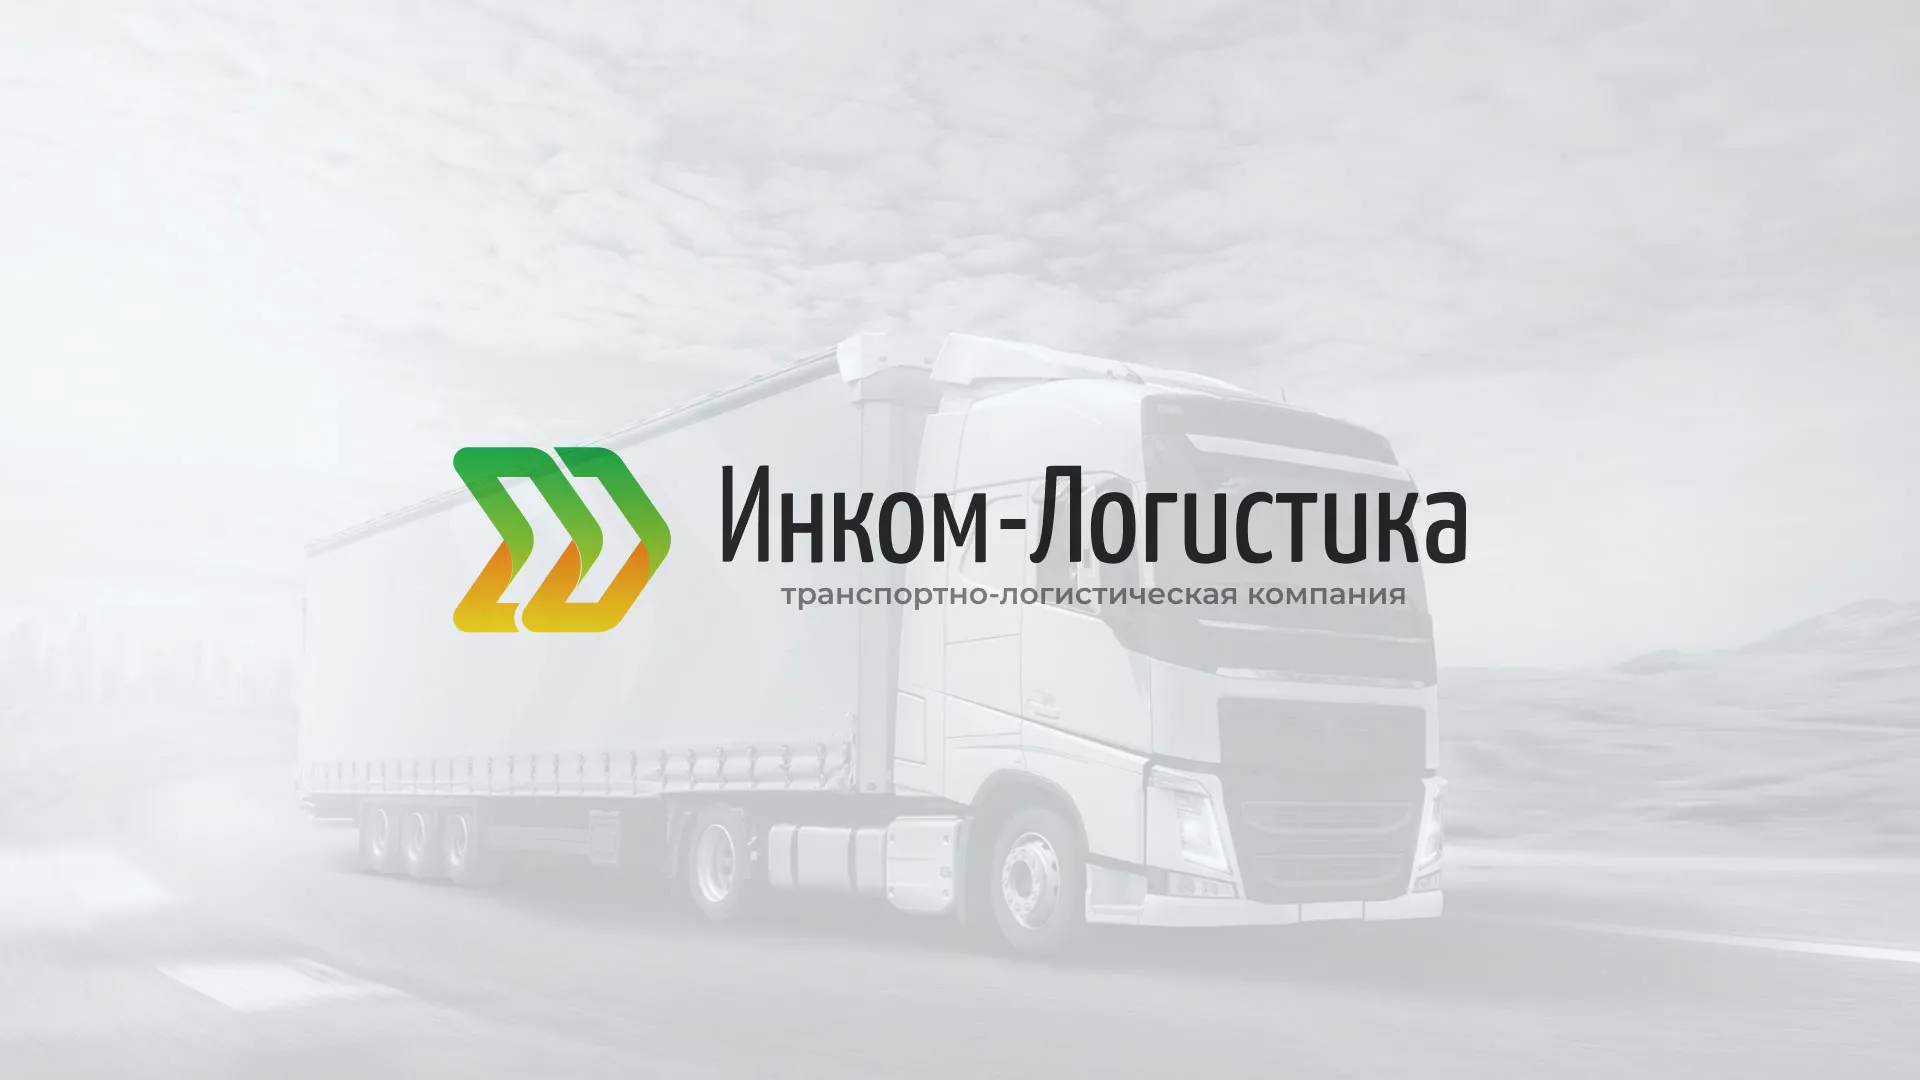 Разработка логотипа и сайта компании «Инком-Логистика» в Дагестанских Огнях